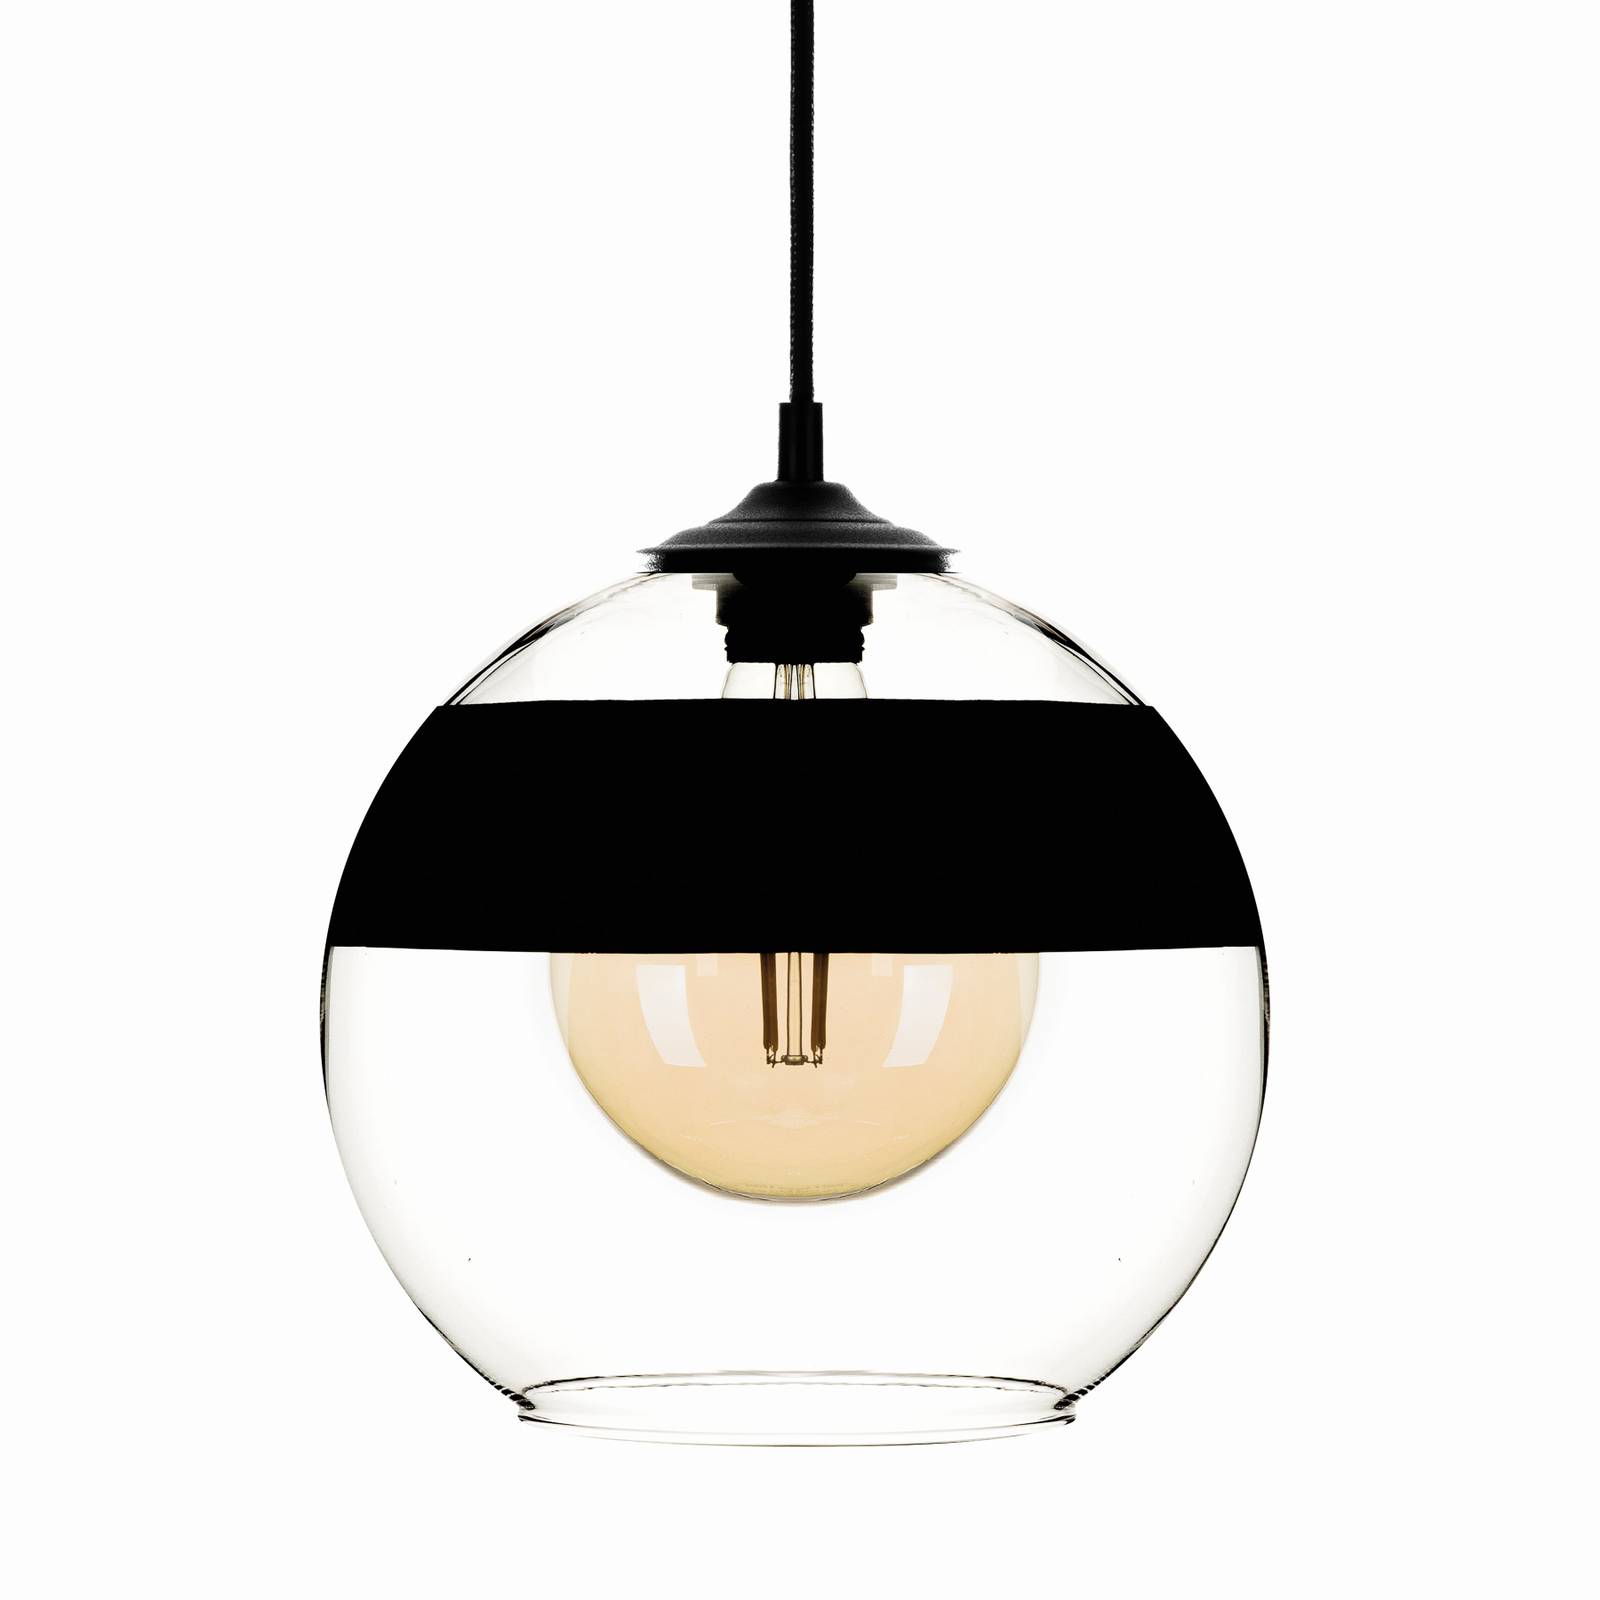 Solbika Lighting Závěsná lampa Monochrome Flash čirá/černá Ø 25cm